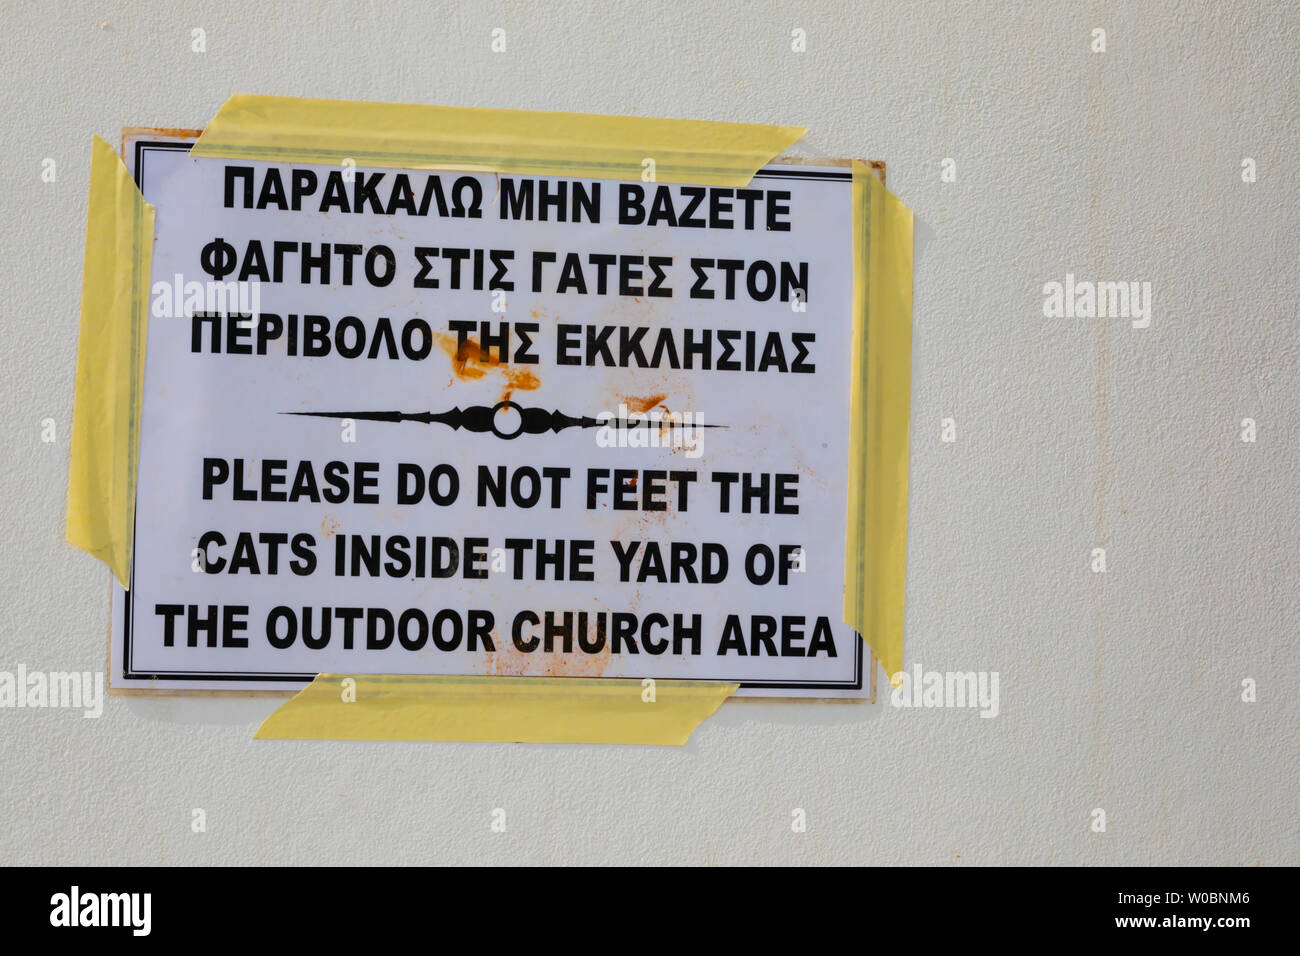 Segno attenzione a non alimentare i gatti, con errore di ortografia. La cappella di Agia Triada, città di Paralimni, Cipro. giugno 2019 Foto Stock